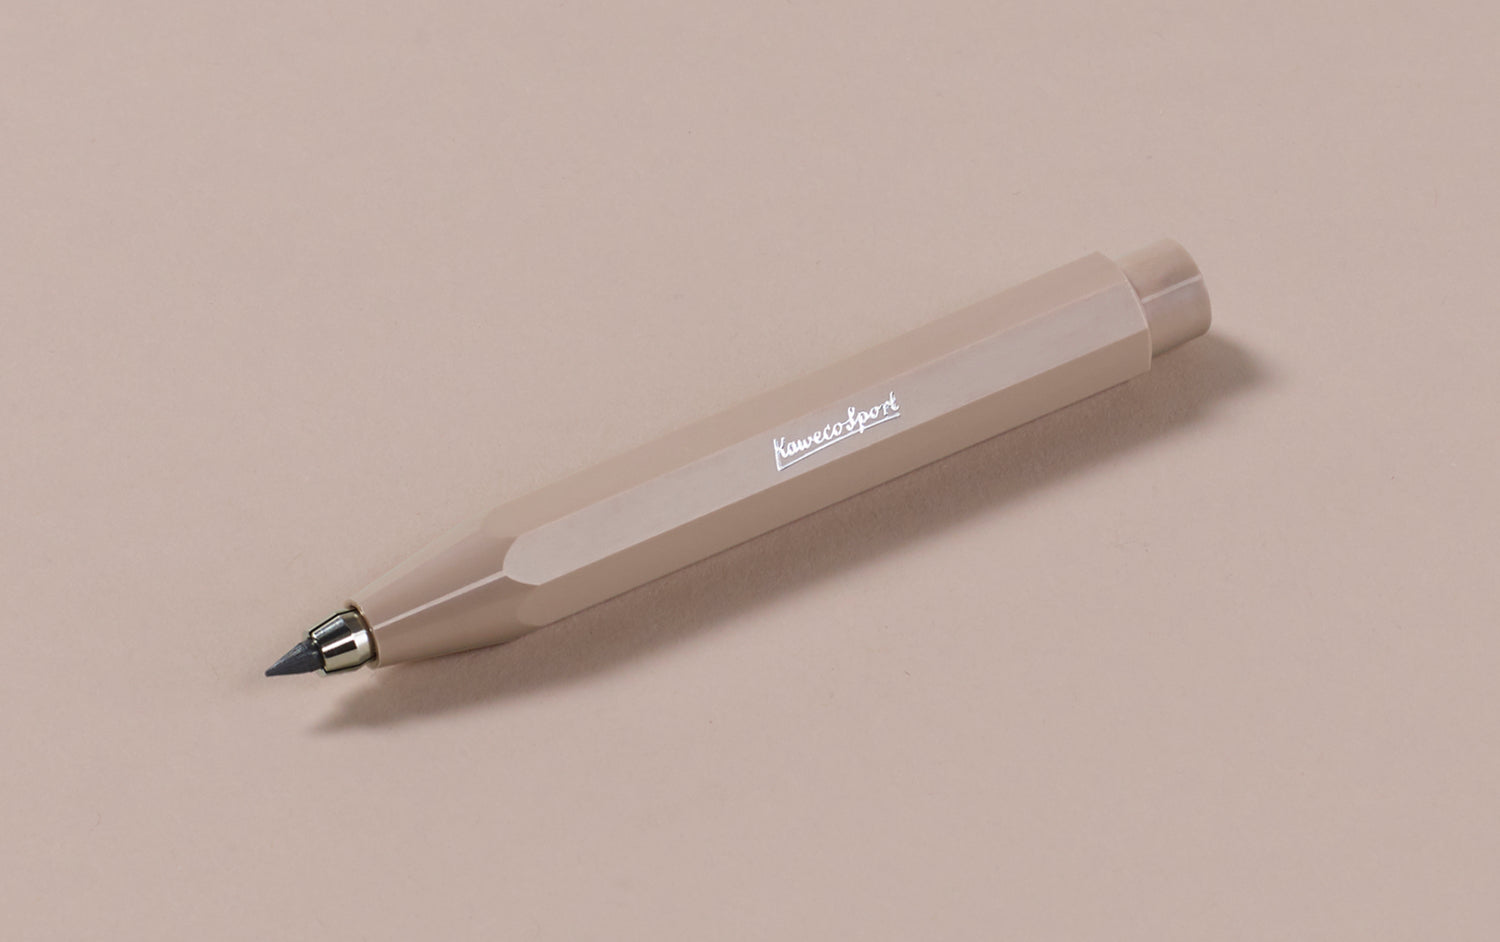 Nude "Macchiato" Kaweco Skyline 3.2mm Clutch Pencil